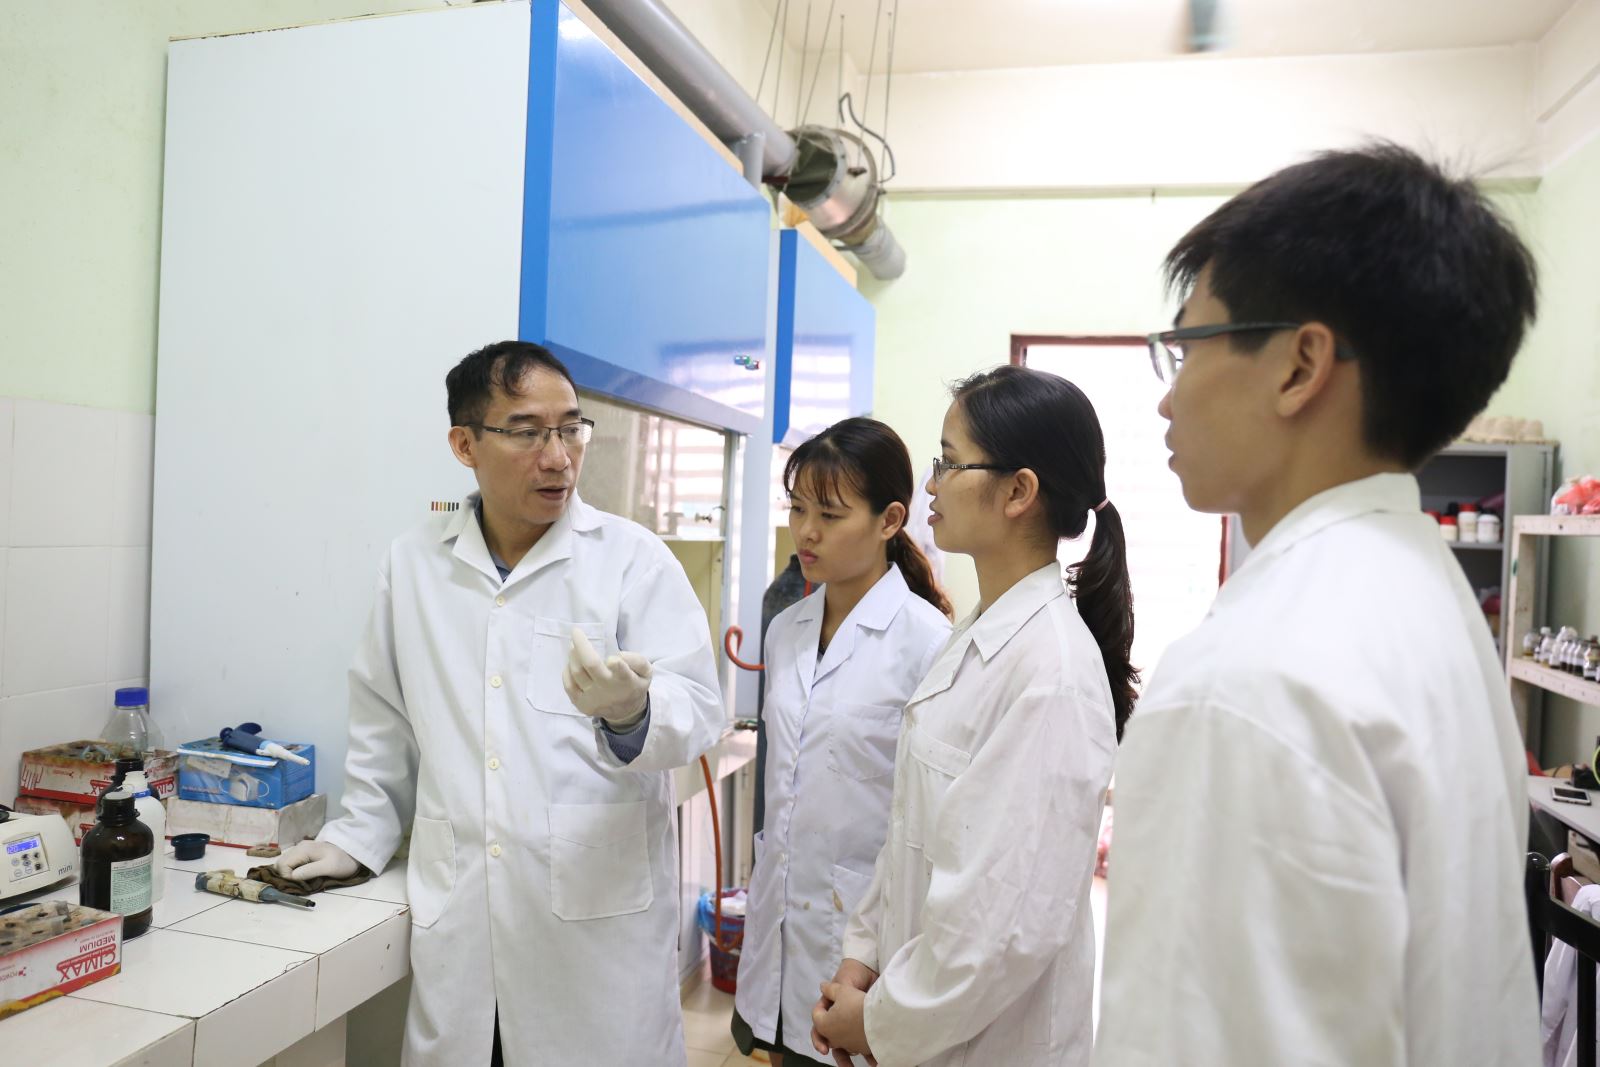 Những đầu tư mới của Bộ Khoa học và Công nghệ thông qua chương trình tài trợ sau tiến sĩ được hy vọng góp phần nâng cao năng lực nghiên cứu và cải thiện môi trường học thuật Việt Nam nhưng để chương trình như vậy phát huy hiệu quả như mong đợi, có thể vẫn cần những điều chỉnh phù hợp trong tương lai.